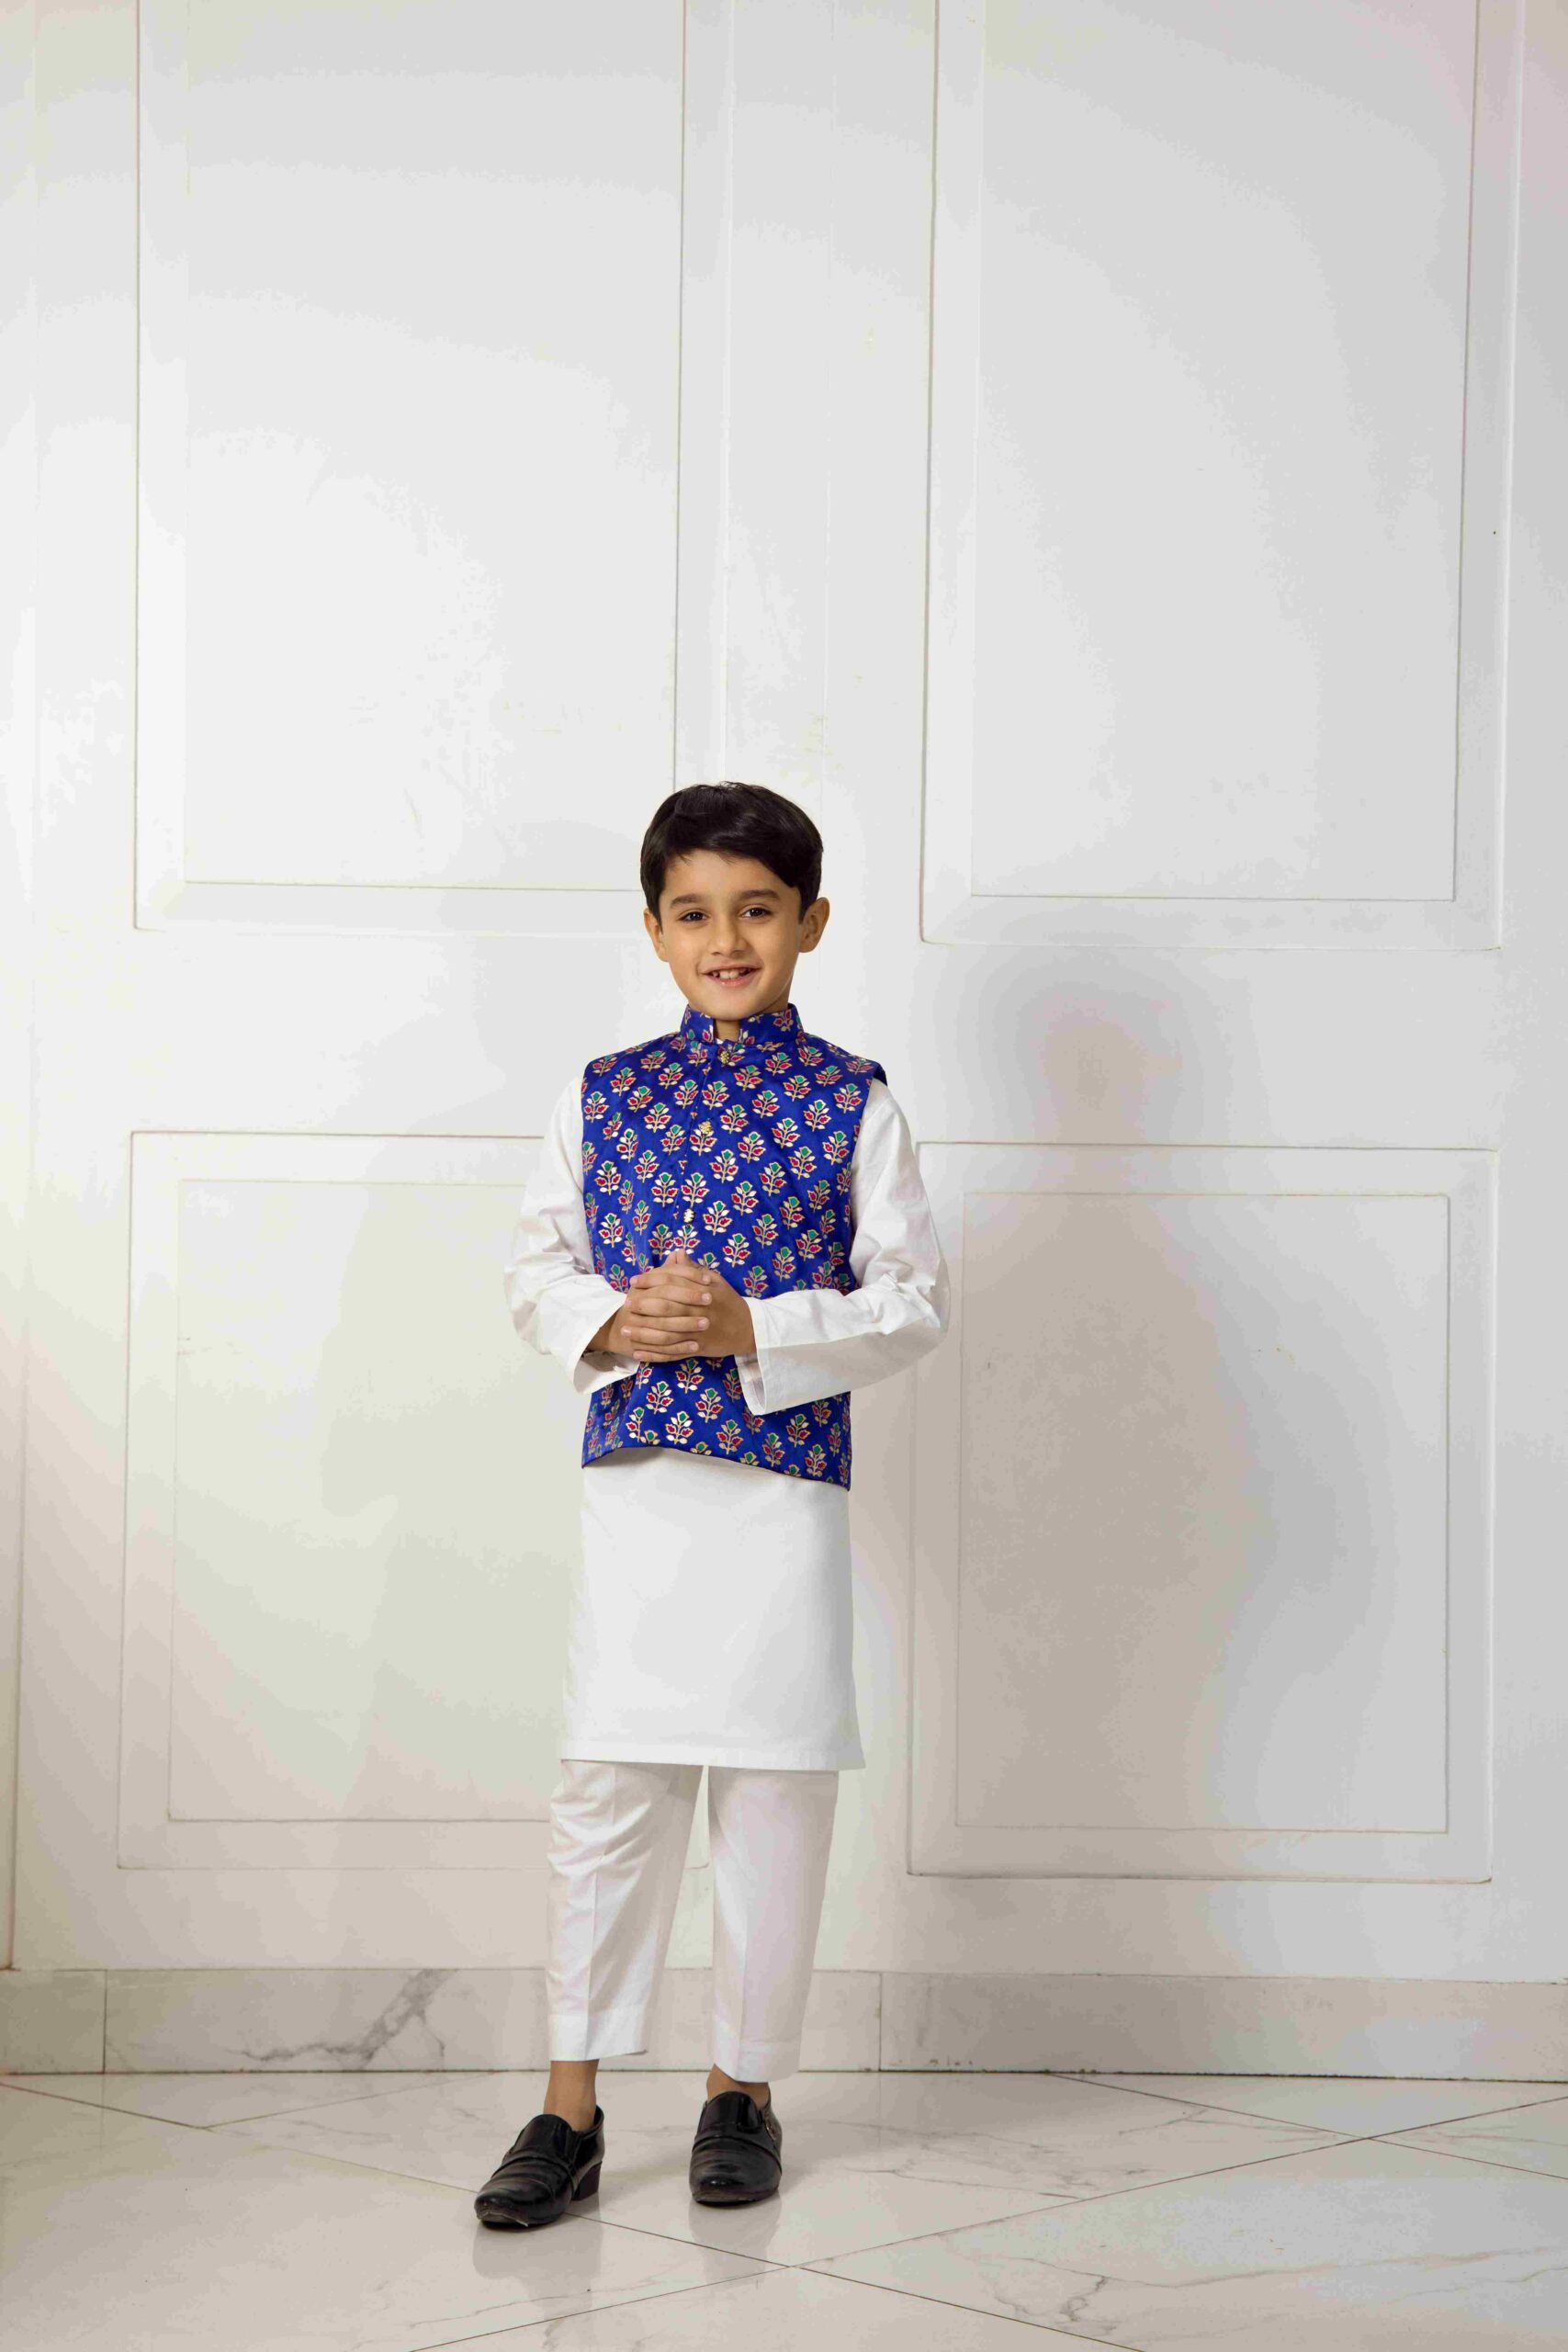 shop online for kidswear in Pakistan-shk-1053